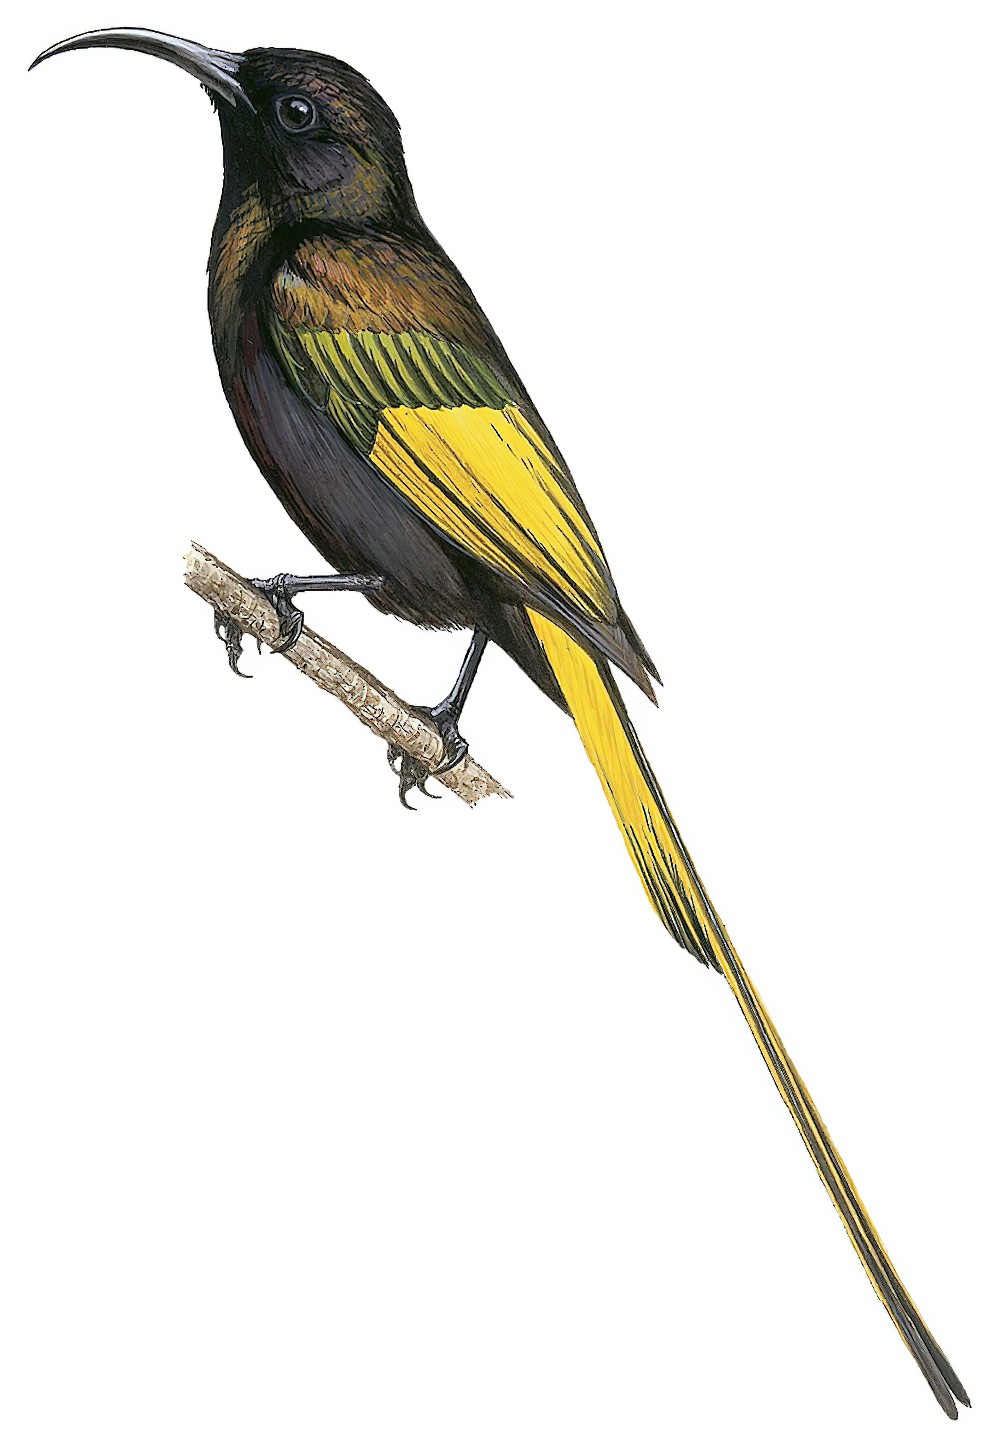 Golden-winged Sunbird / Drepanorhynchus reichenowi